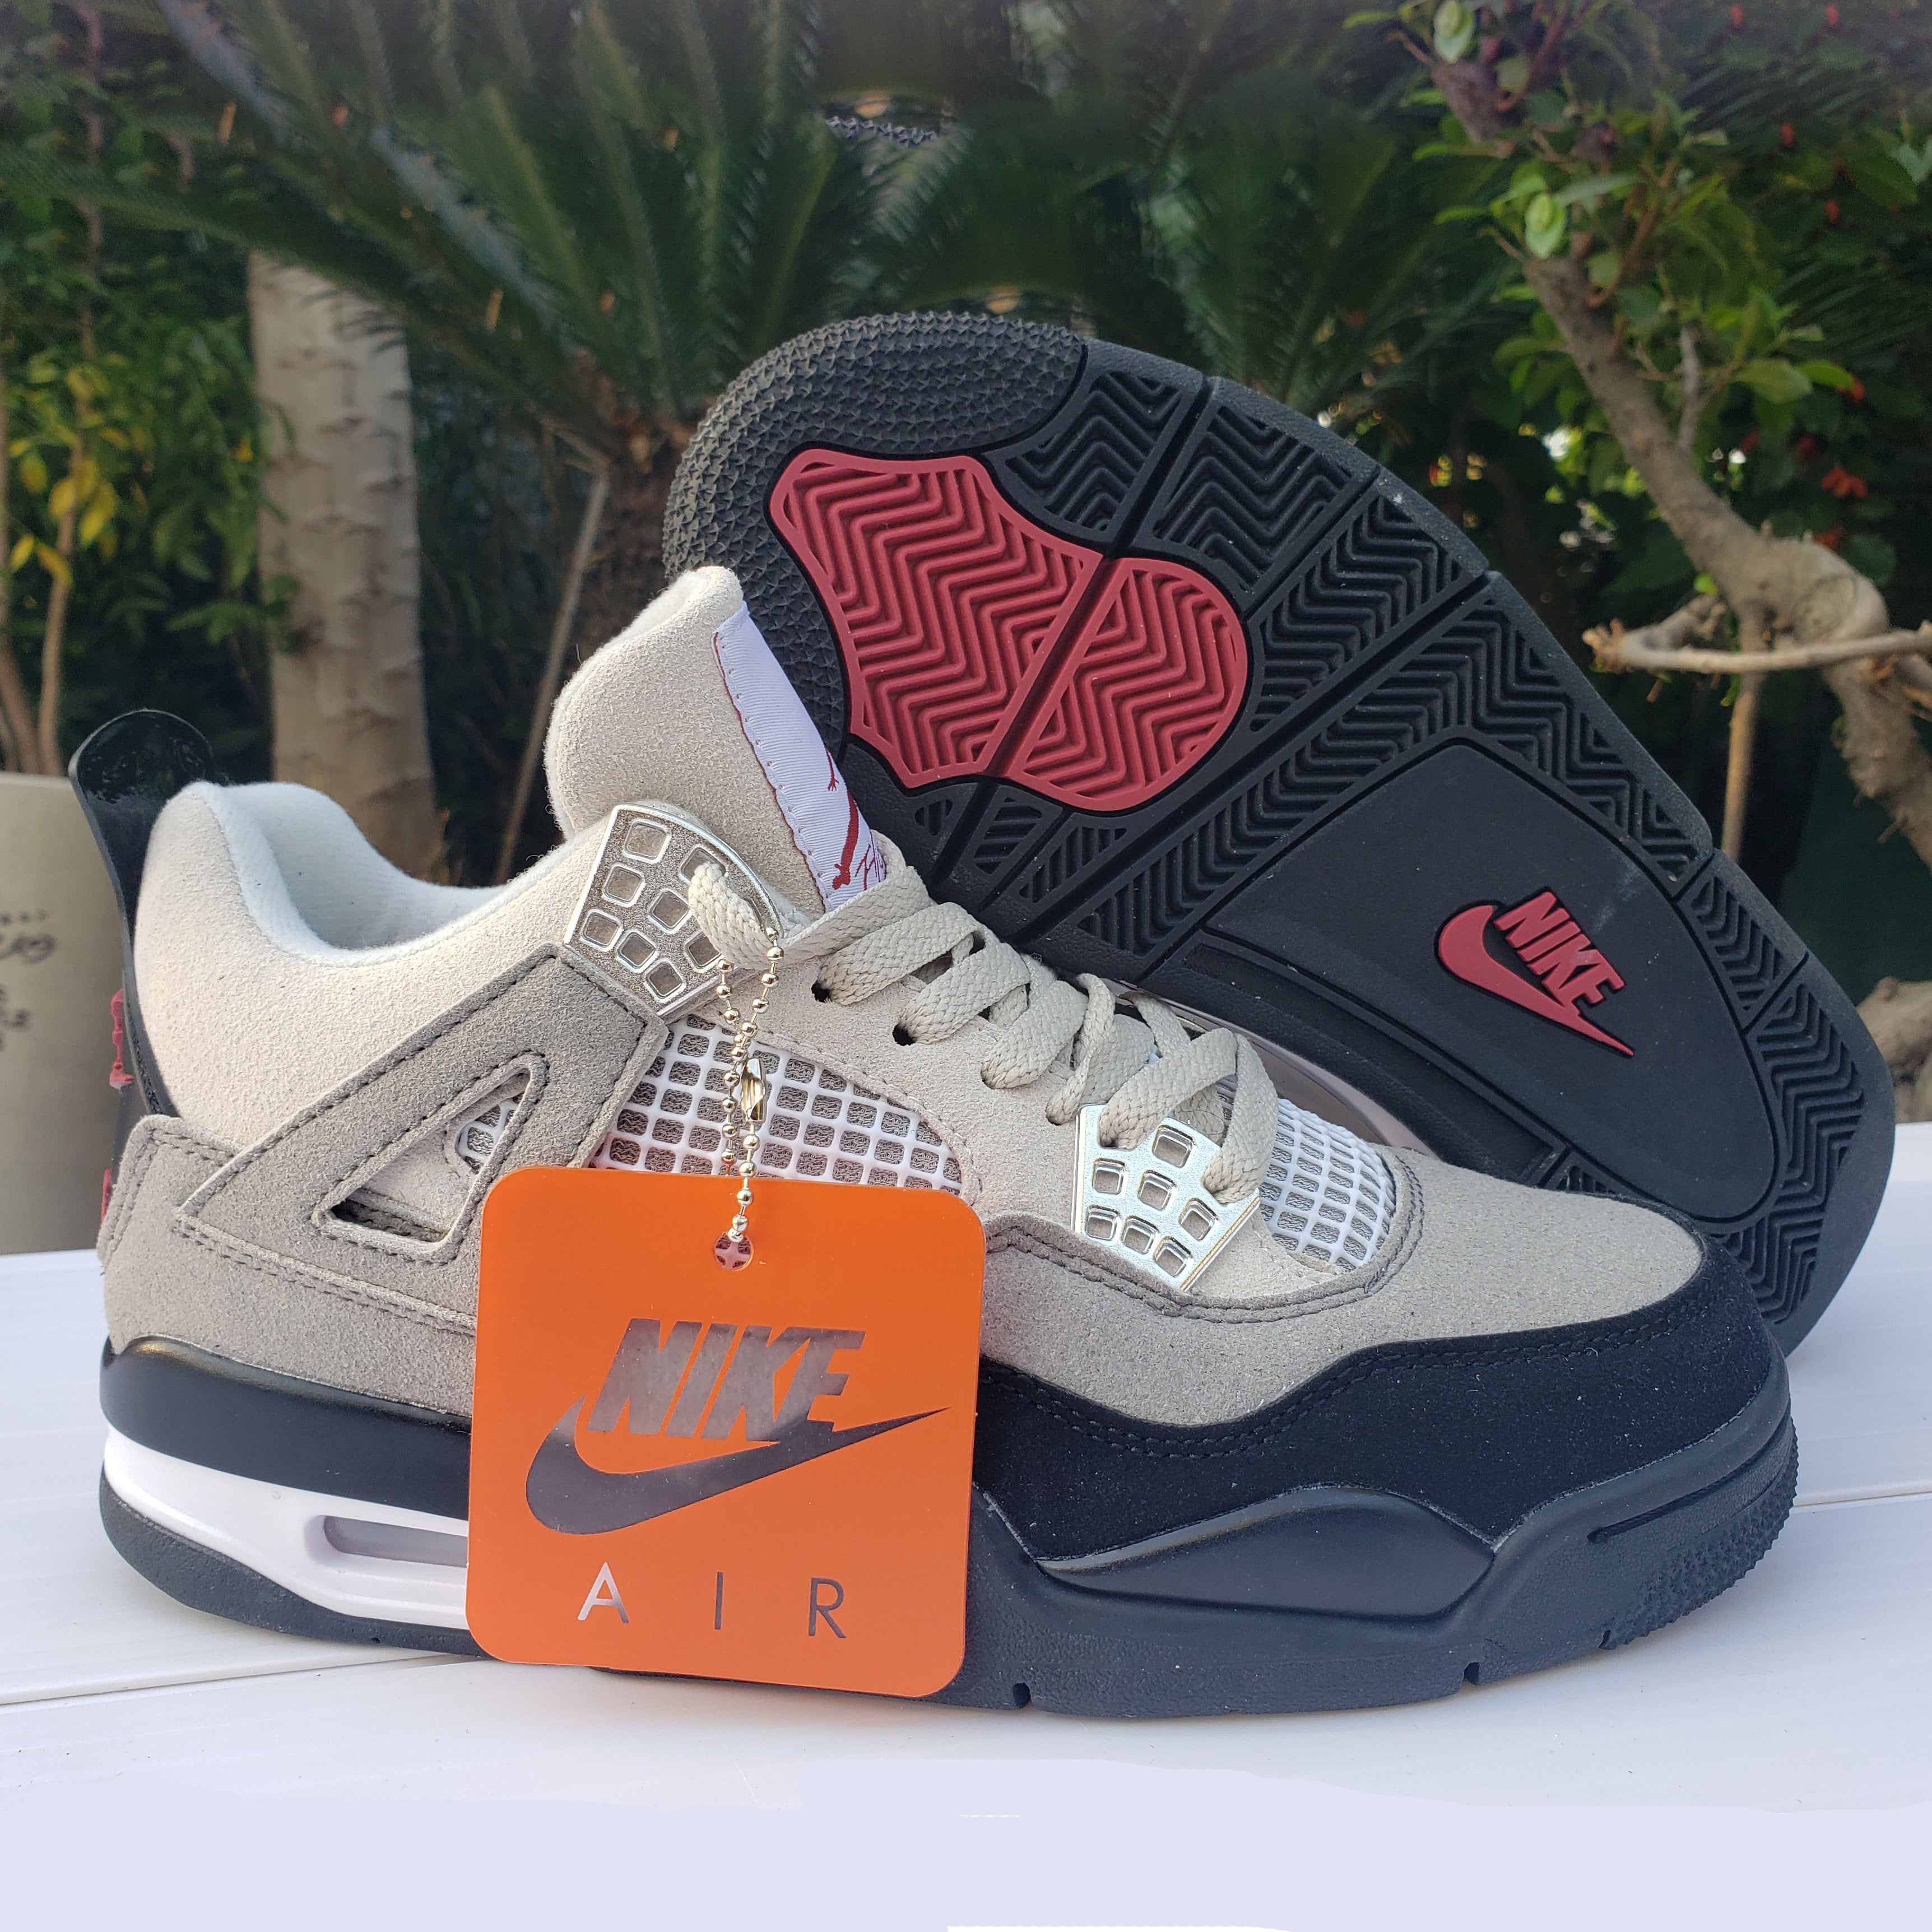 Nike Air Jordan 4 AJ4 Retro Basketball Shoes Men's and Women